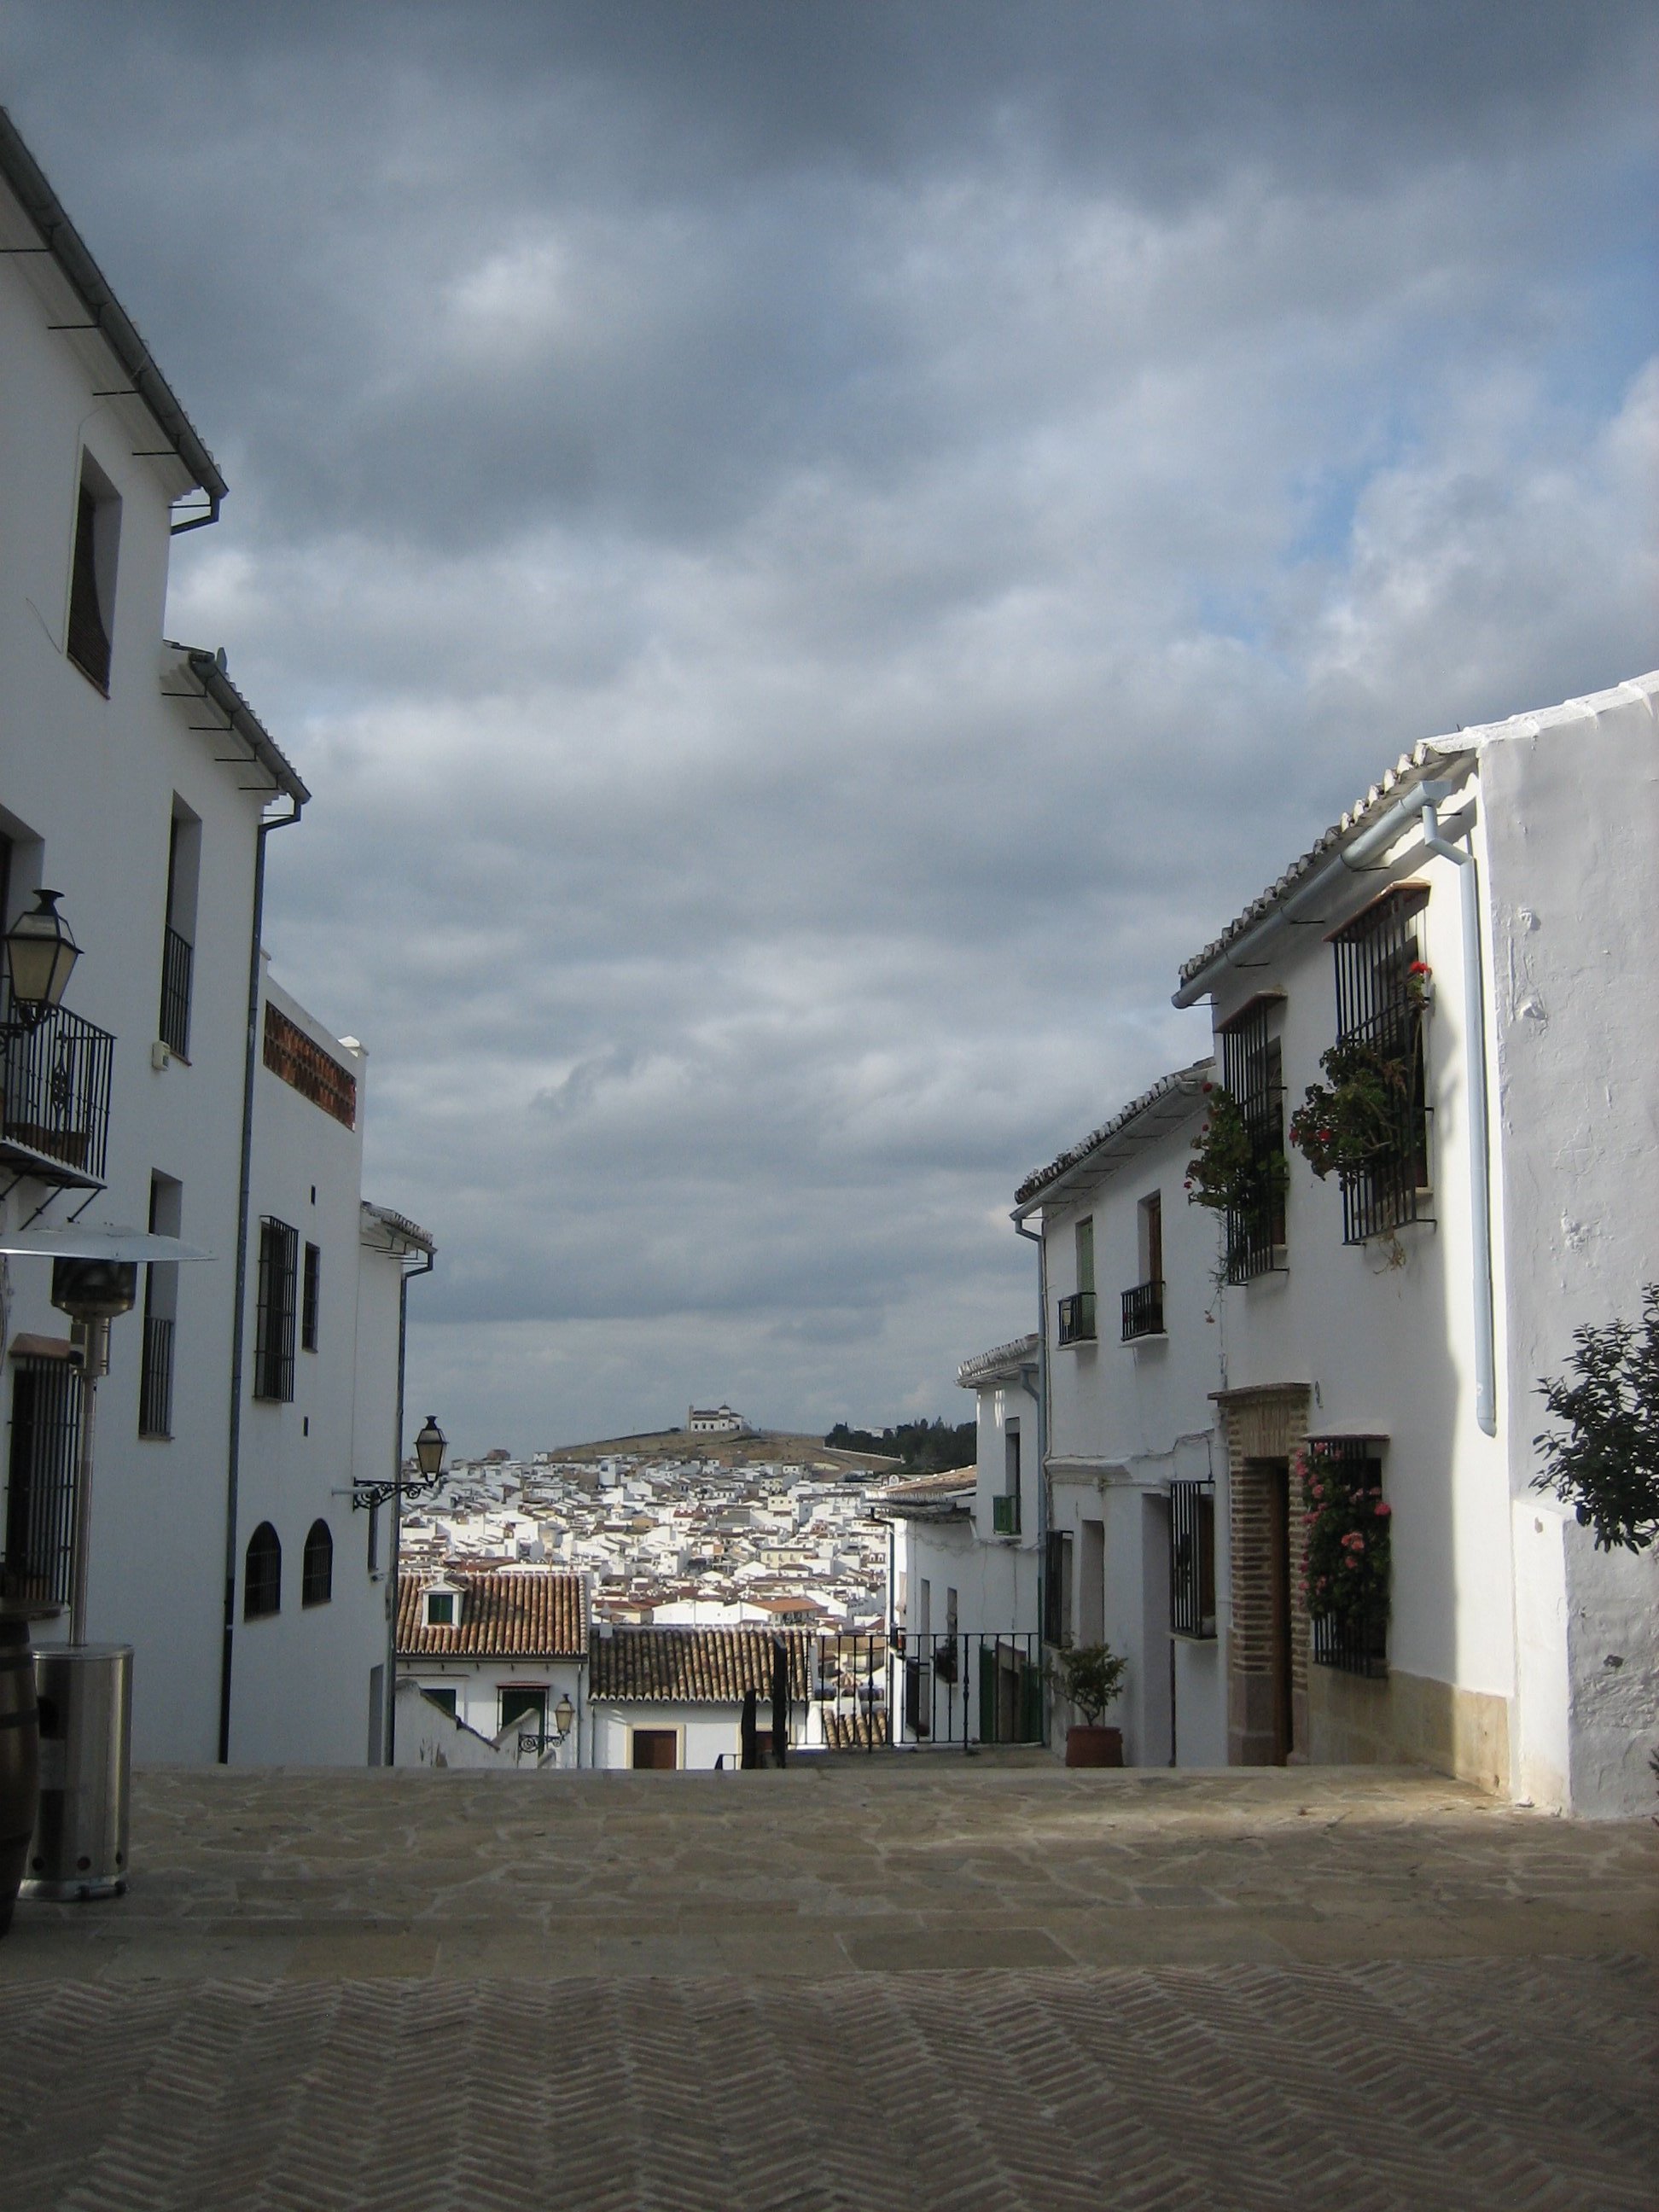 Erinnerungen einen Roadtrip durch Andalusien